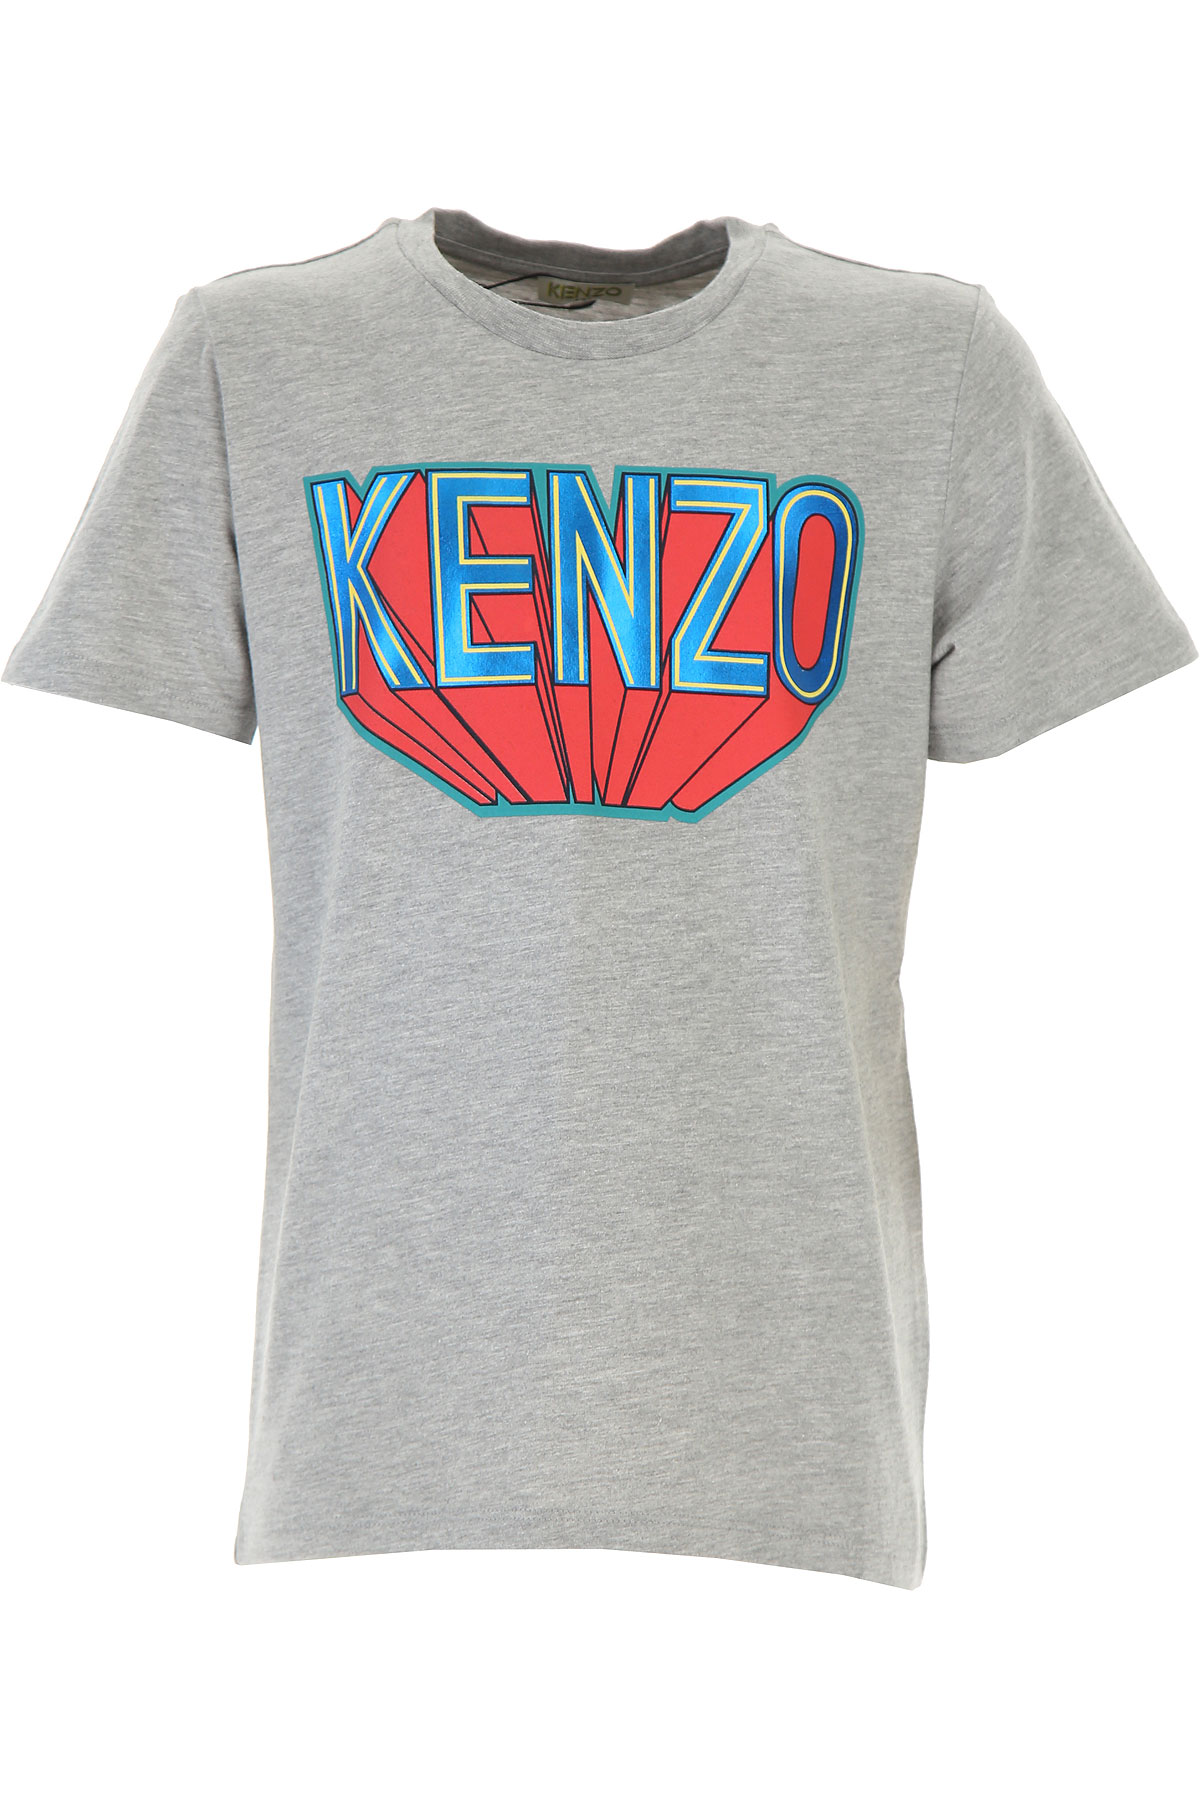 Kenzo Kinder T-Shirt für Jungen Günstig im Sale, Grau, Baumwolle, 2017, 10Y 12Y 14Y 2Y 3Y 4Y 6Y 8Y